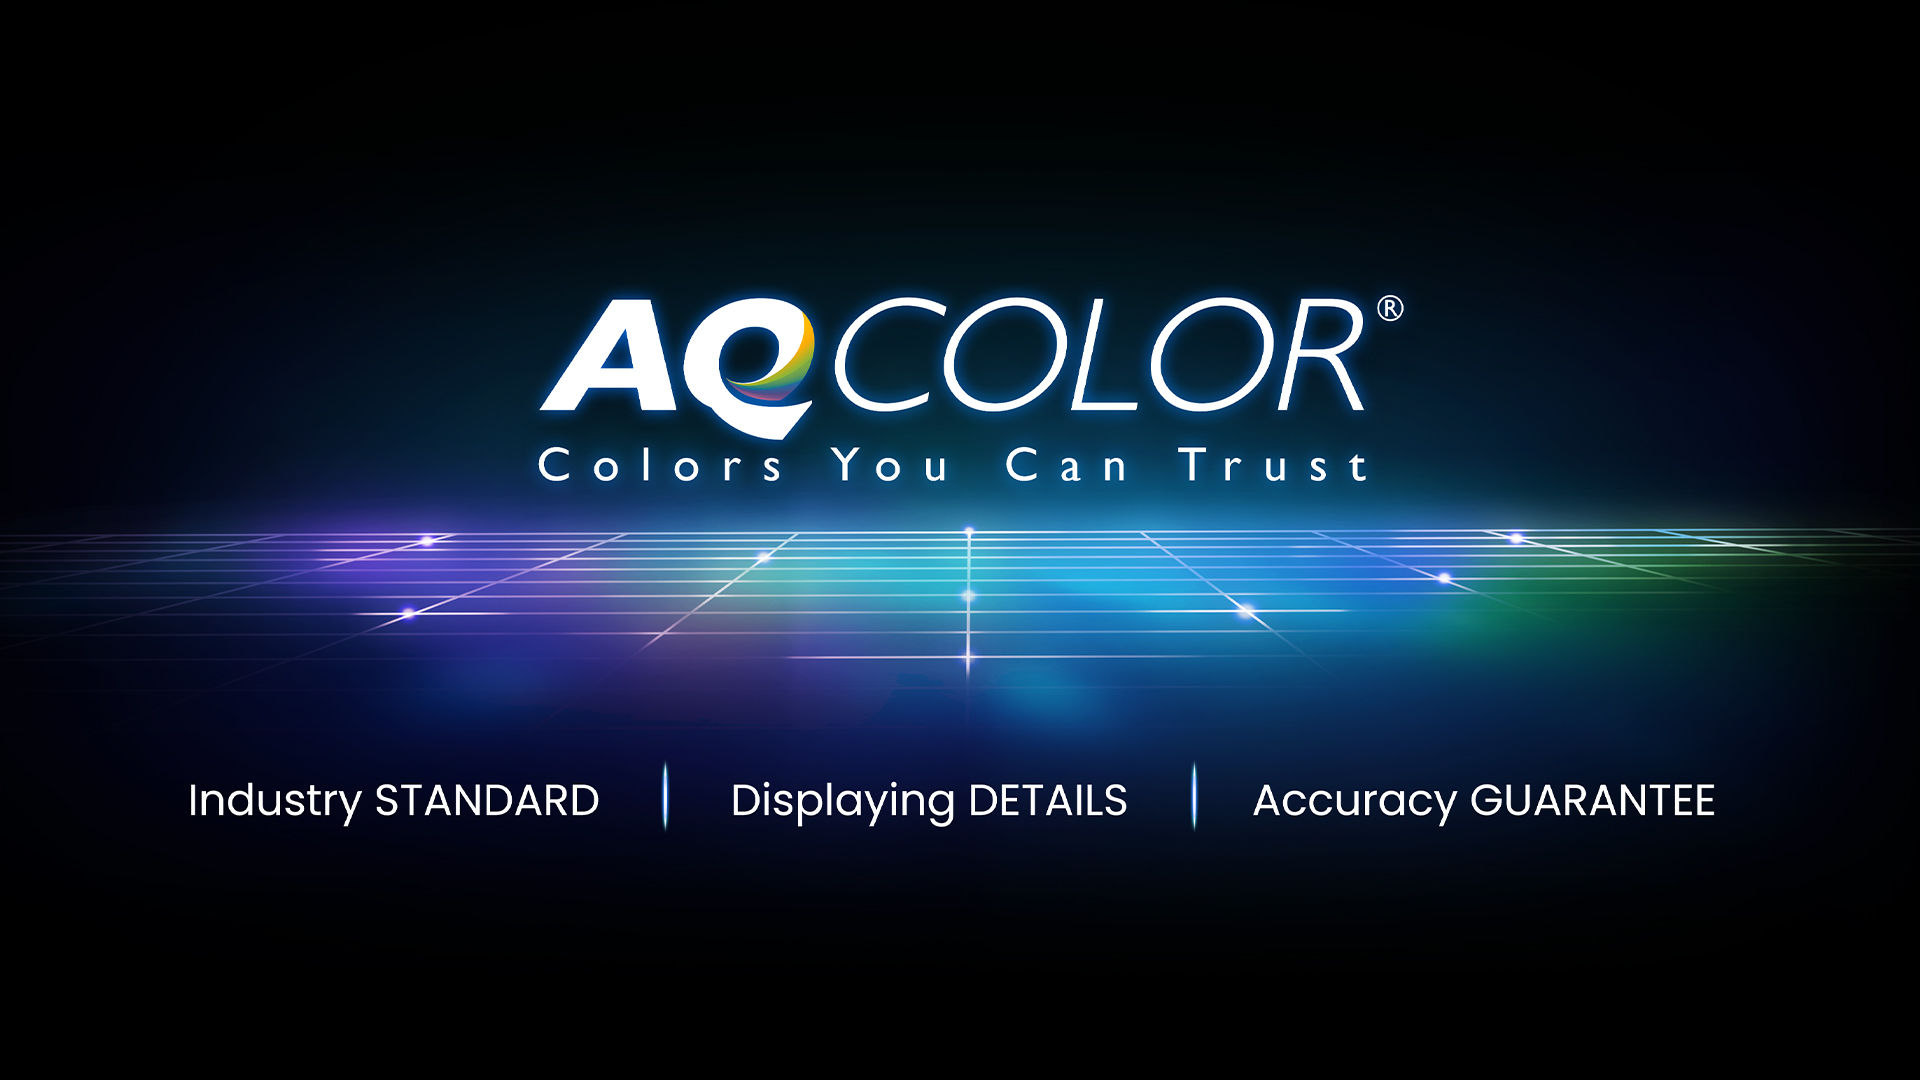 Công nghệ AQCOLOR của BenQ mang đến khả năng tái tạo màu sắc chính xác. Điều này có nghĩa là  màn hình sẽ hiển thị màu chính xác như thật. Được dẫn dắt bởi một chuyên gia về màu sắc, BenQ đã tham gia ICC và ISO để thiết lập các tiêu chuẩn và hướng dẫn triển khai liên quan đến màu sắc.